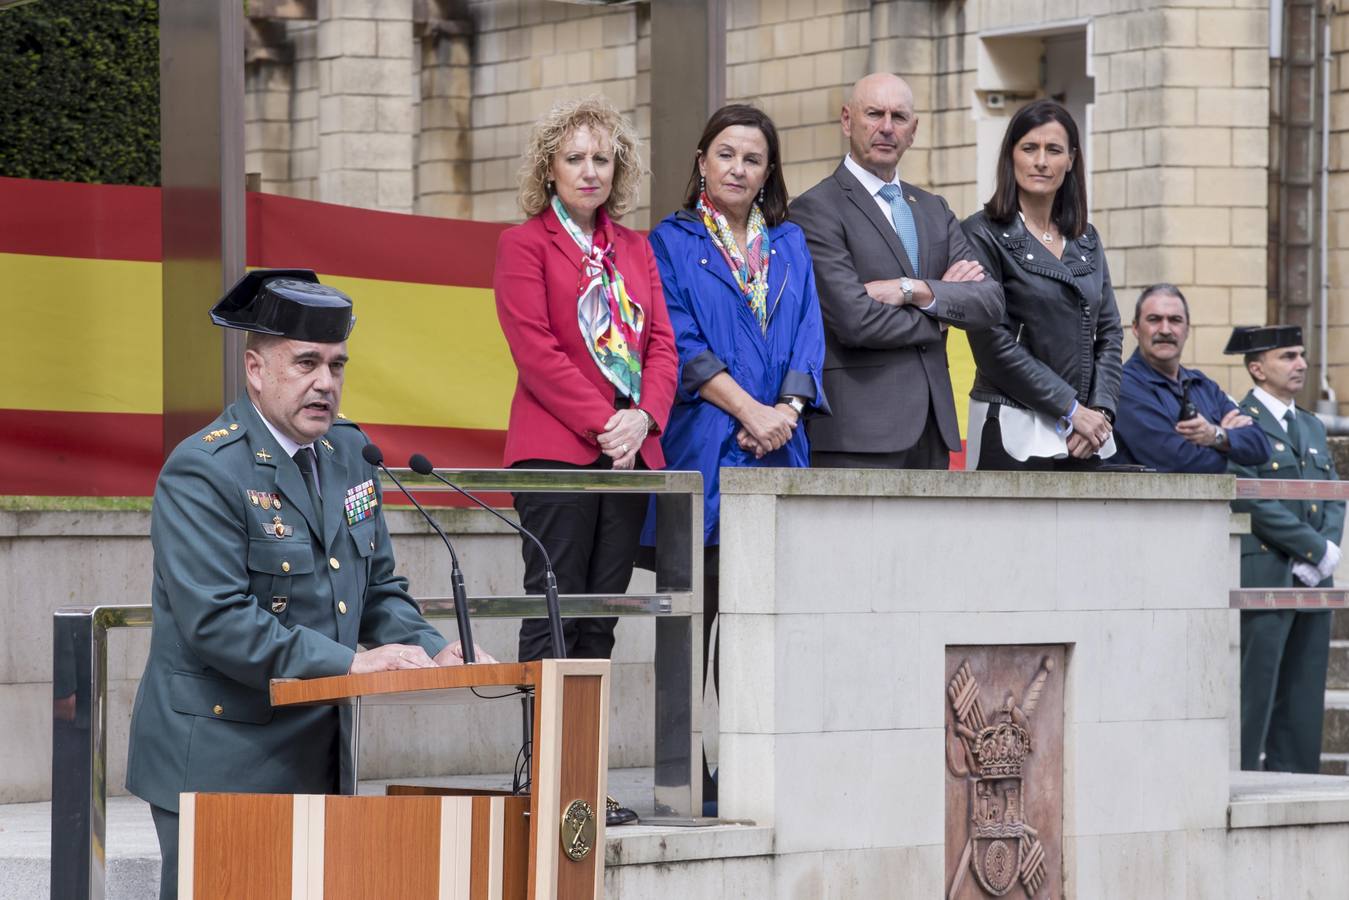 La Guardia Civil de Cantabria ha celebrado este jueves un acto institucional para conmemorar el 175 aniversario de su fundación, en el que se ha condecorado a 20 sargentos, cabos y guardias, y que ha concluido con una exposición de las unidades del Instituto Armado